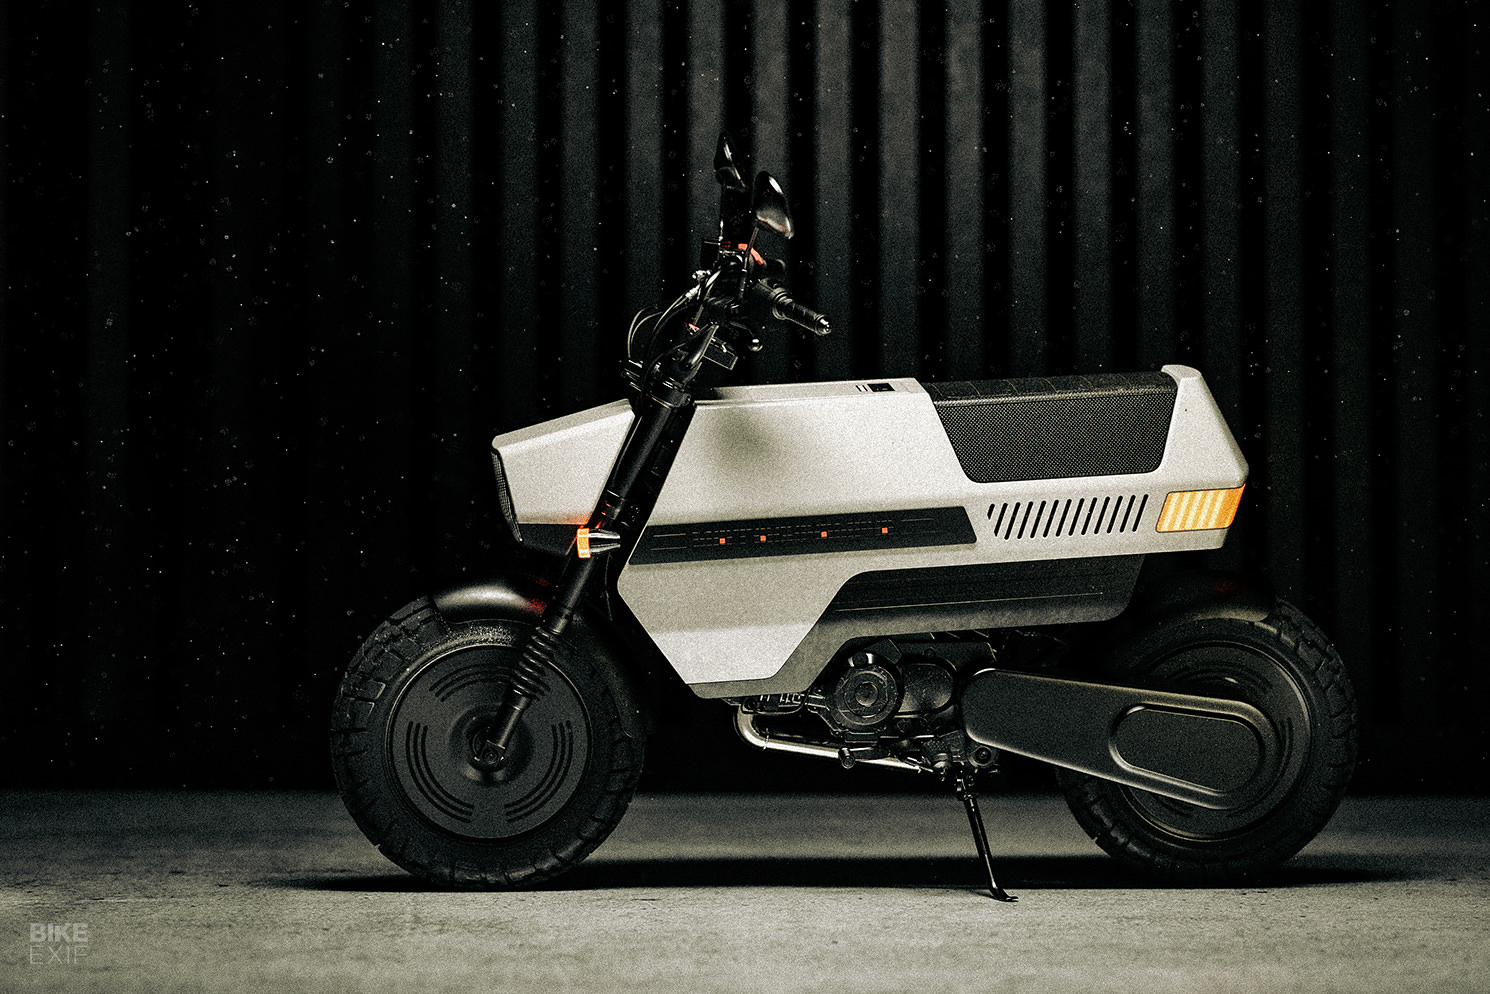 Honda Motocompo concept by Bonedog Design